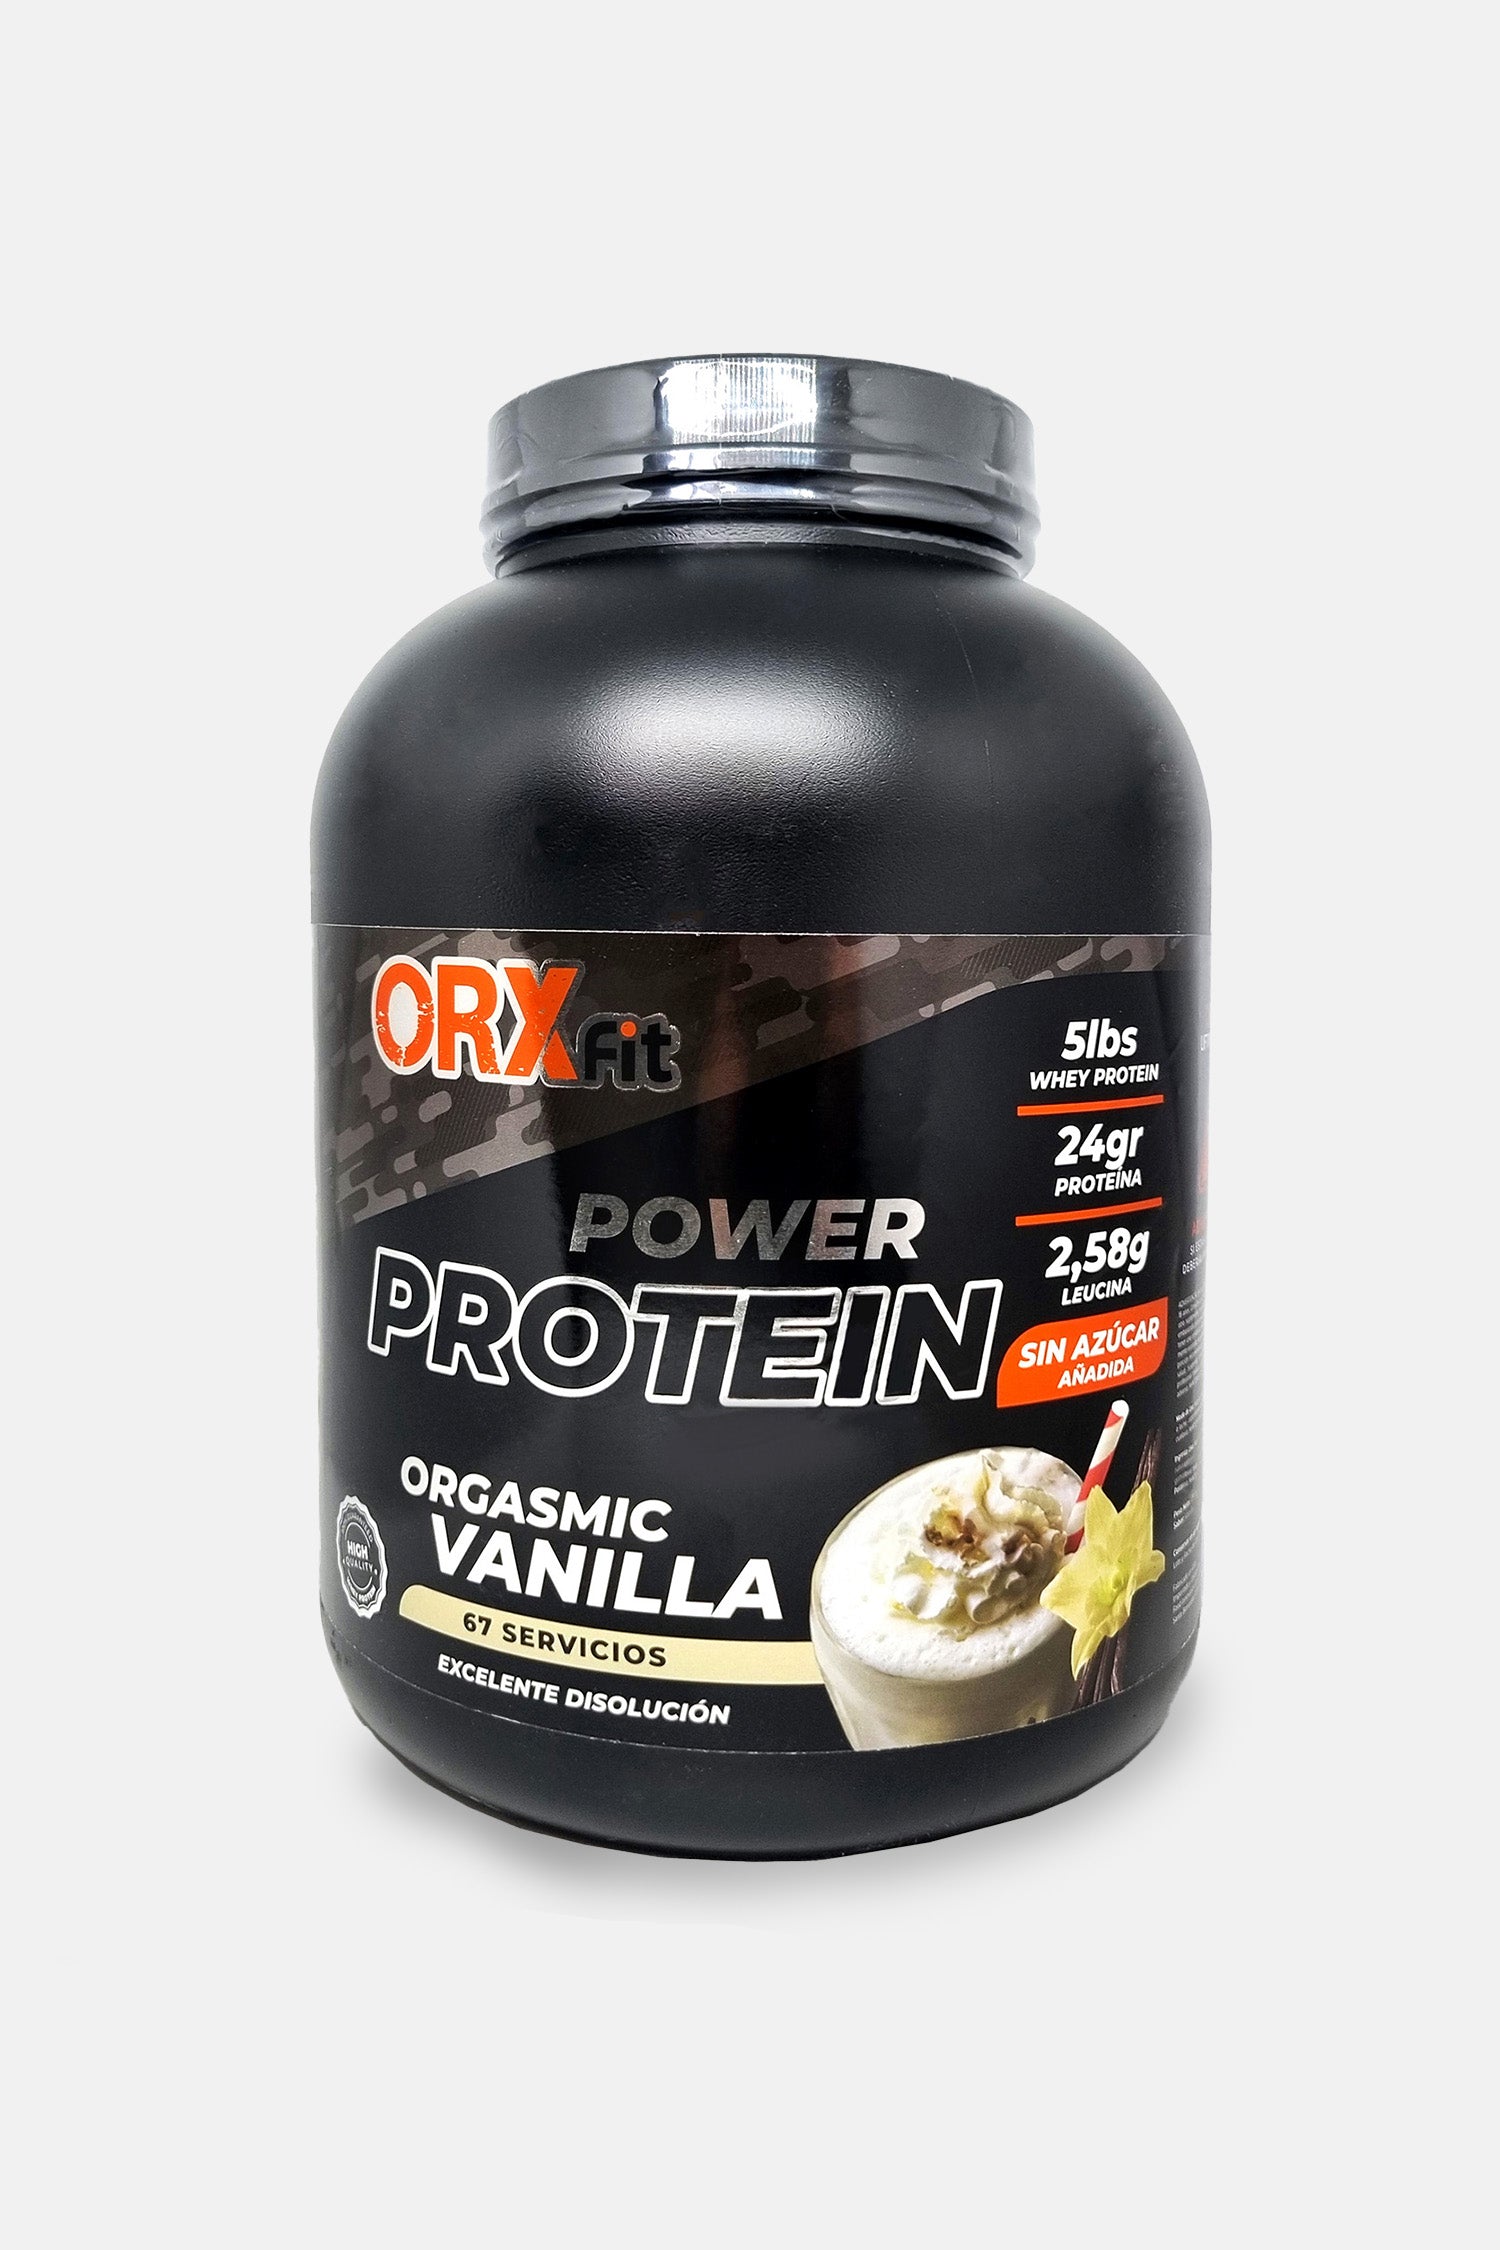 Power Protein ORX